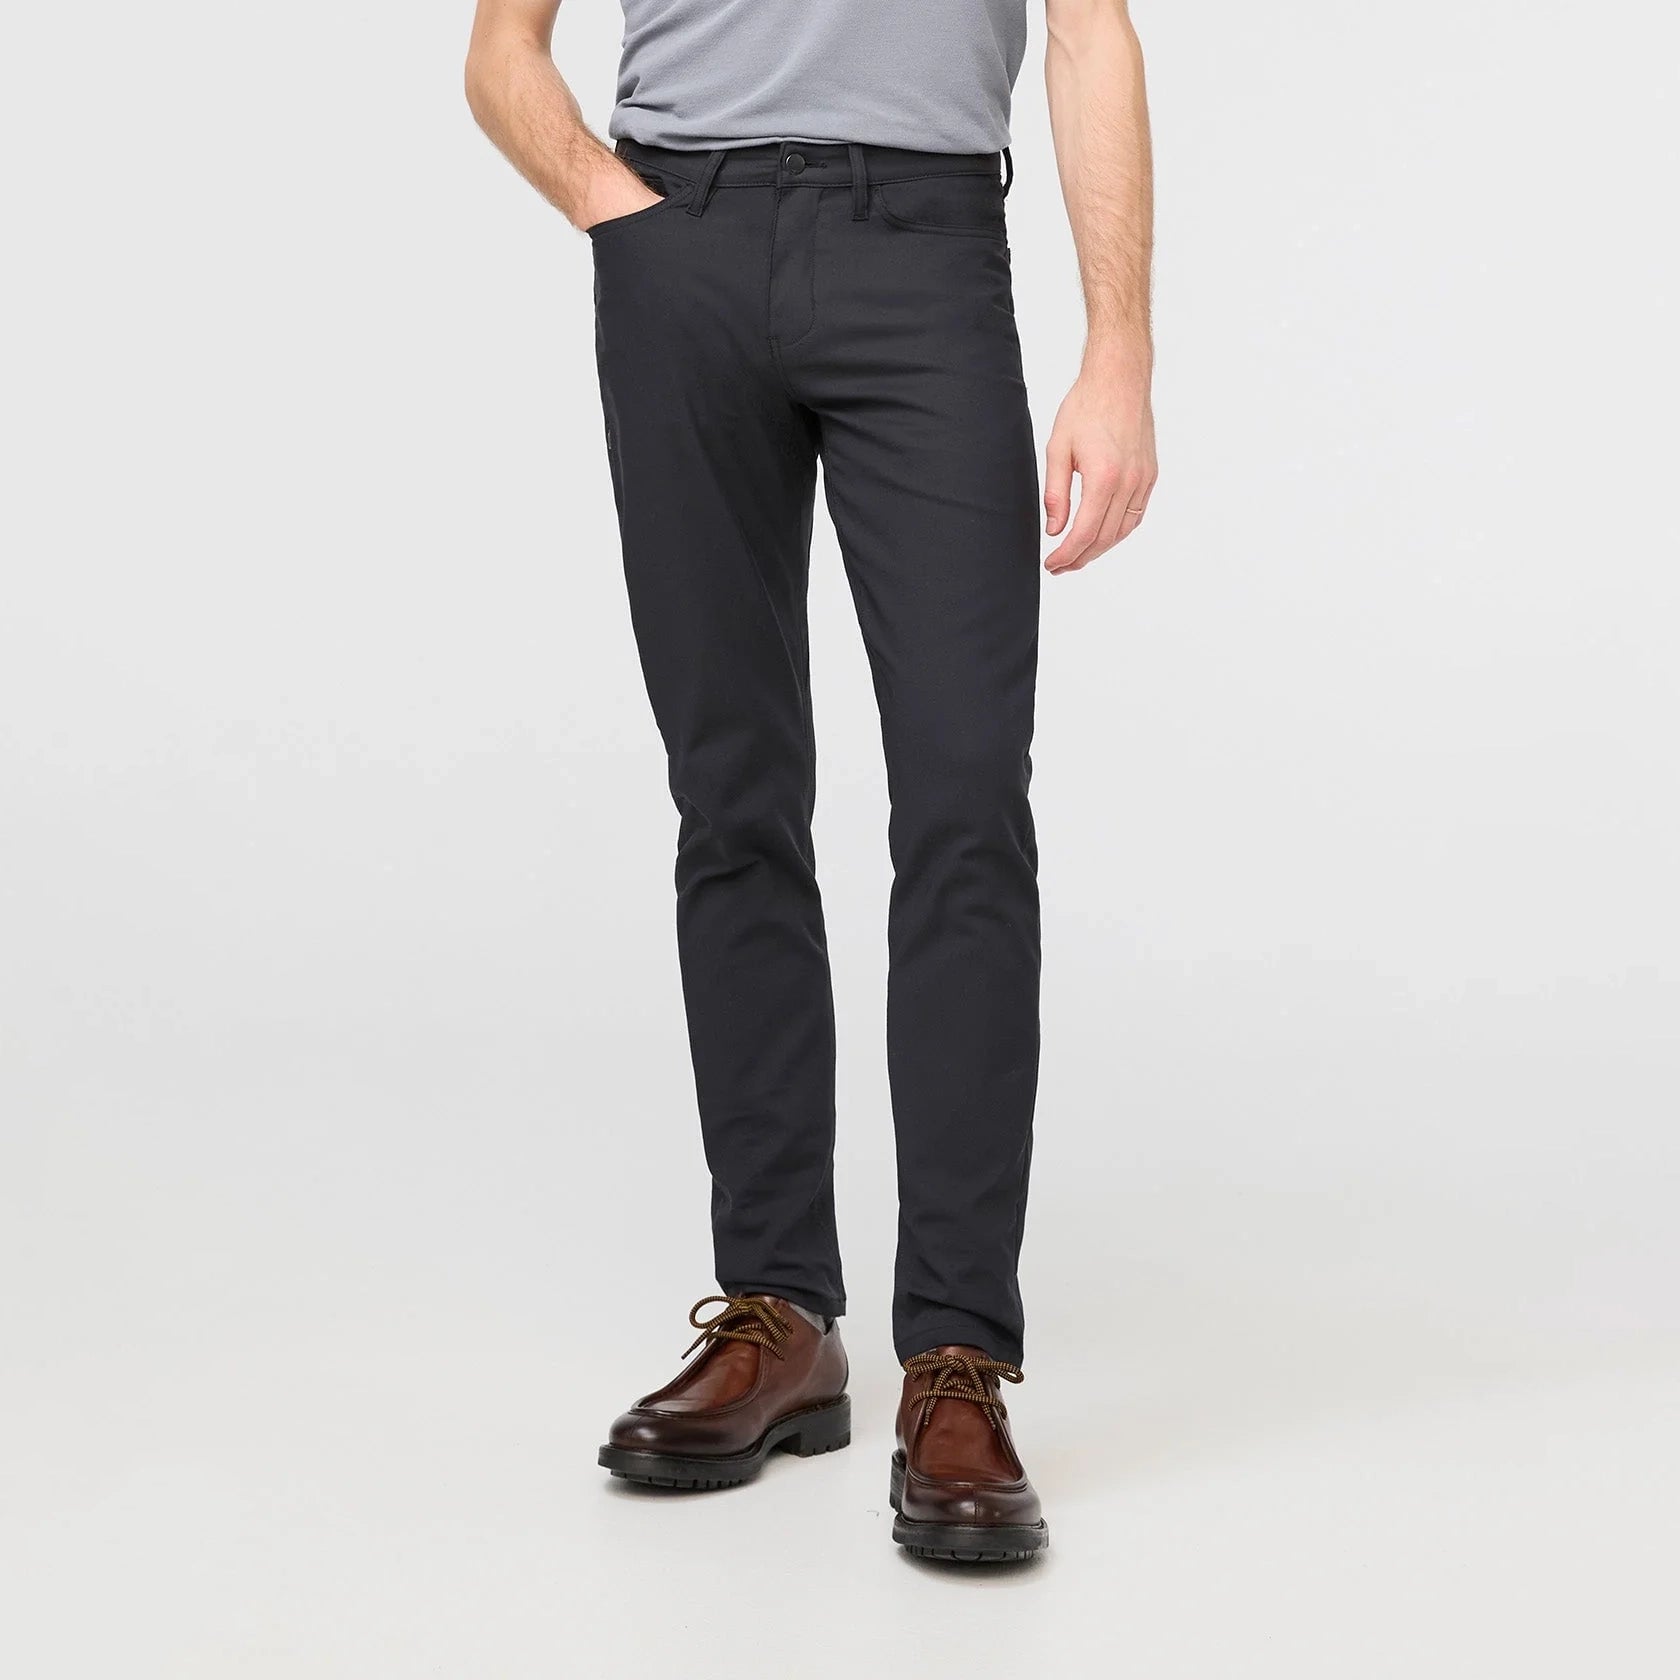 'Du/er NuStretch 5 Pocket Pant Slim' in 'Black' colour